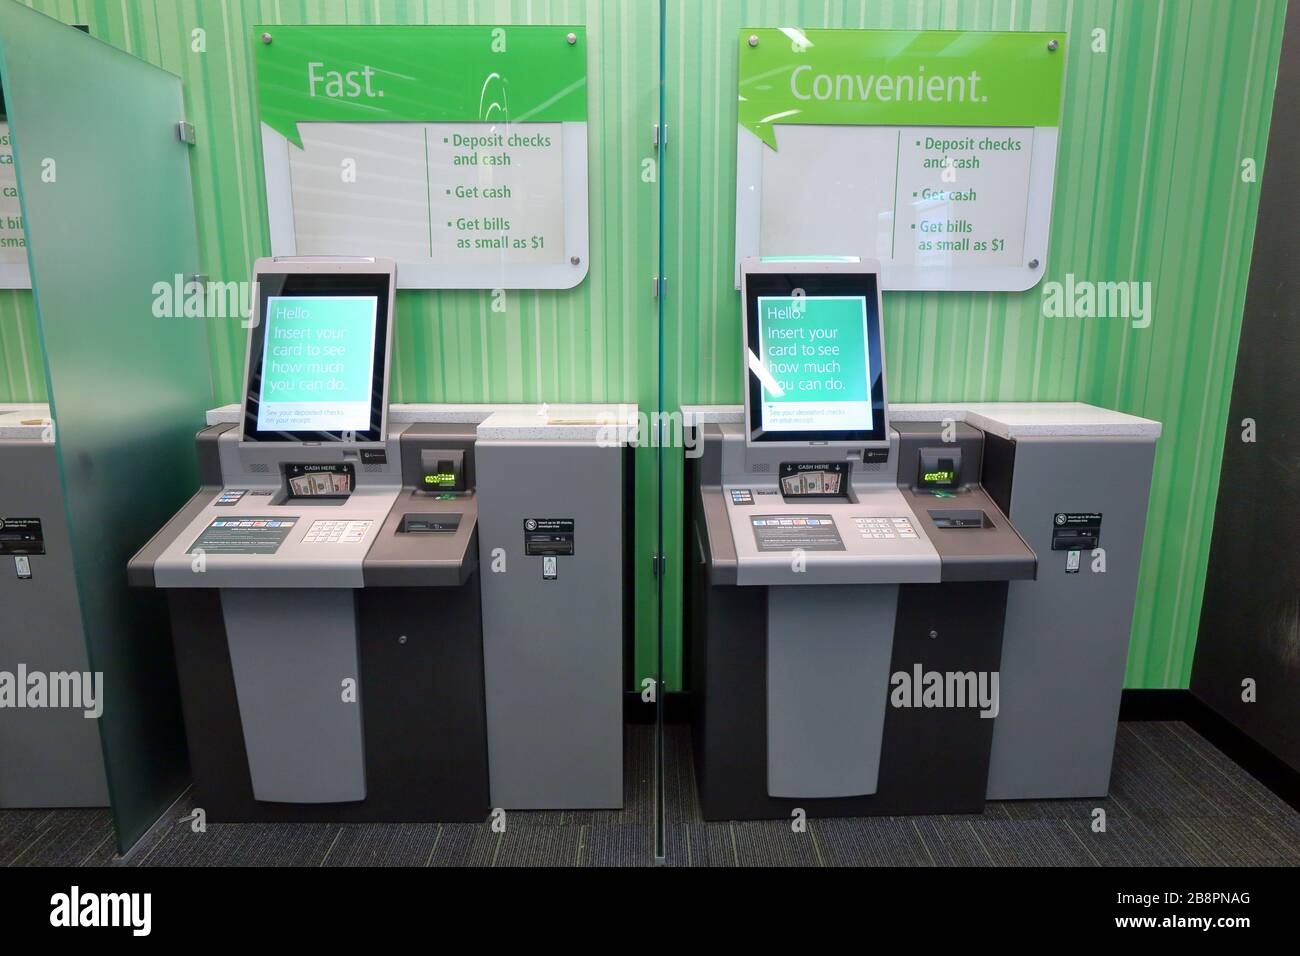 Ein Paar Diebold 9900 In-Lobby-Geldautomaten in einer TD Bank Filiale. Die Geldautomaten können mehrere Stückelungen von 1 bis 50 Dollar auf Rechnungen ausgeben. Stockfoto